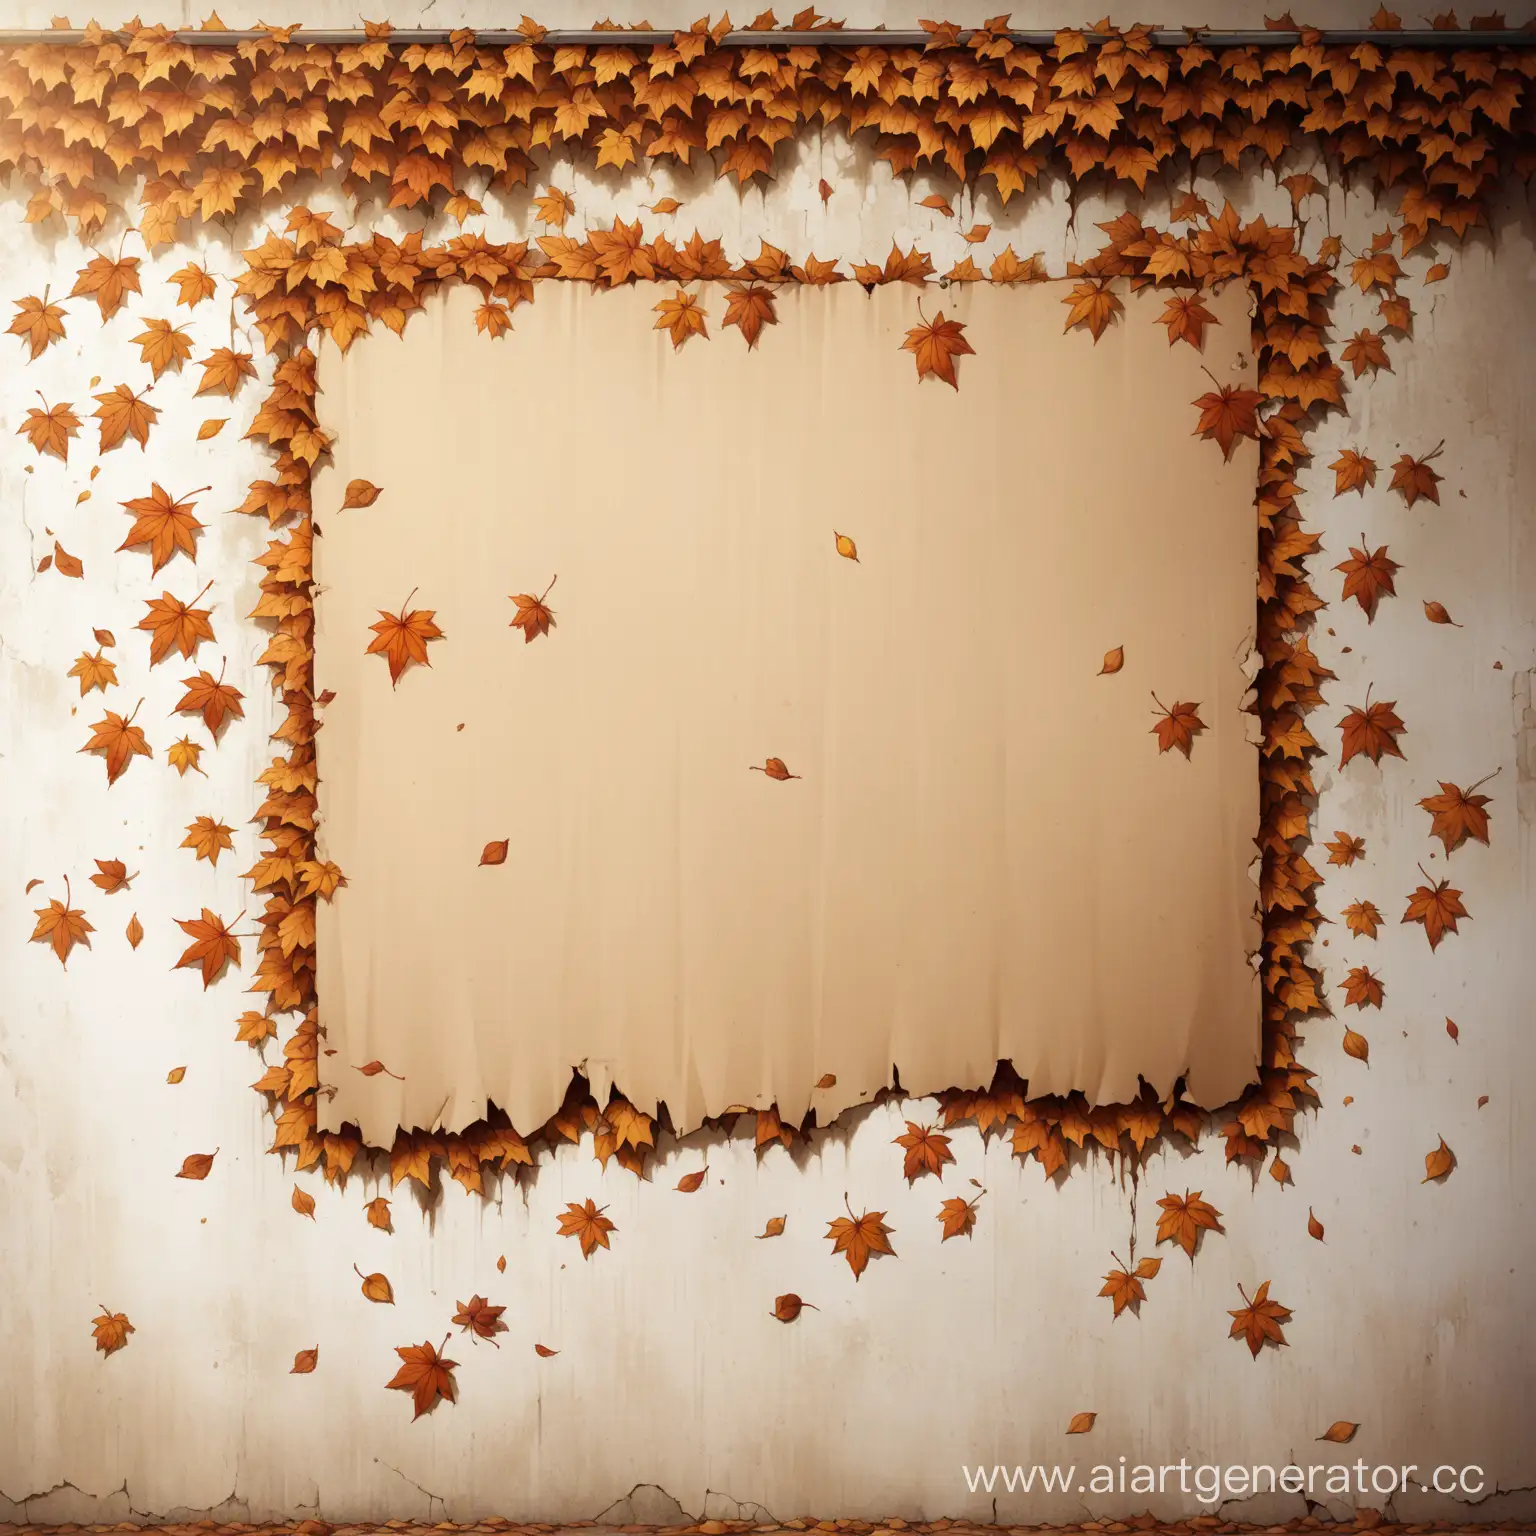 Объявление в виде пустого листа на стене с оторванными концами внизу, стена старая, пошарпанная, вся в листьях и рисунках
